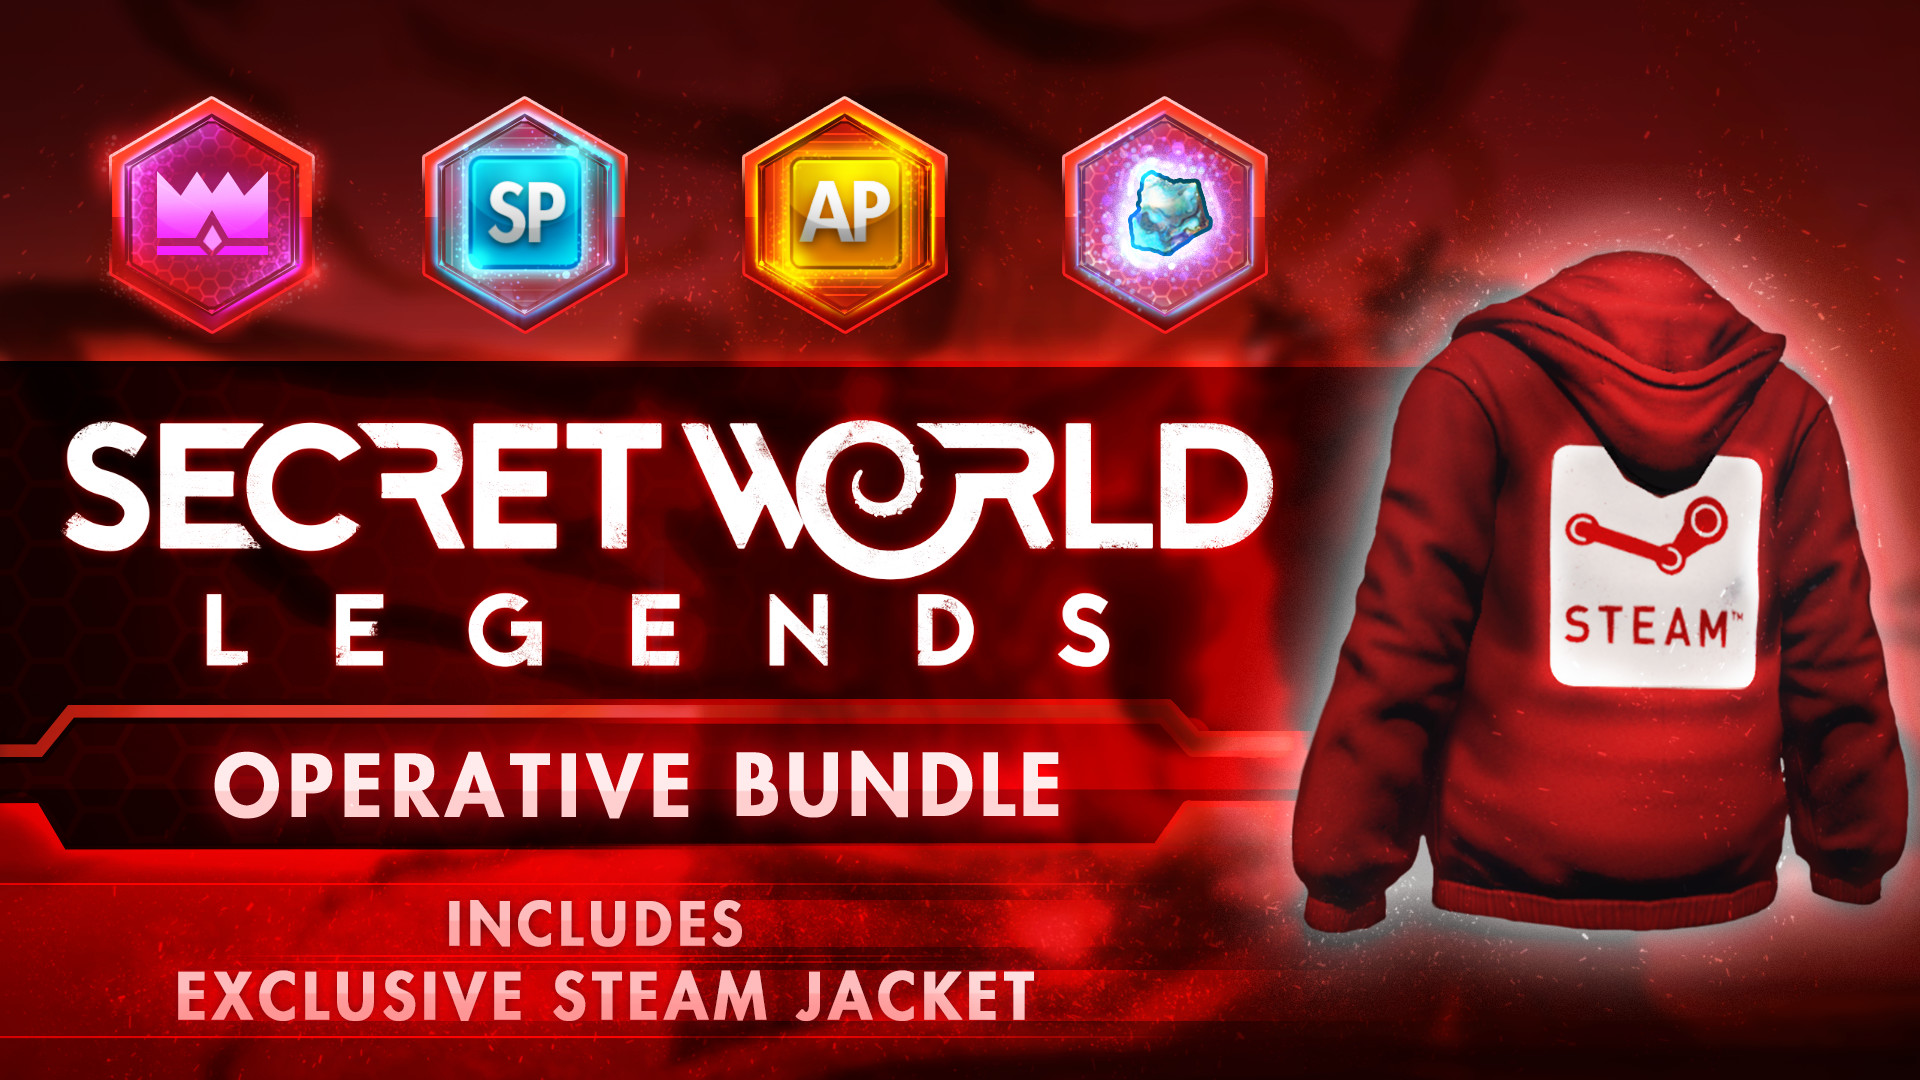 Secret World Legends: Operative Bundle Featured Screenshot #1